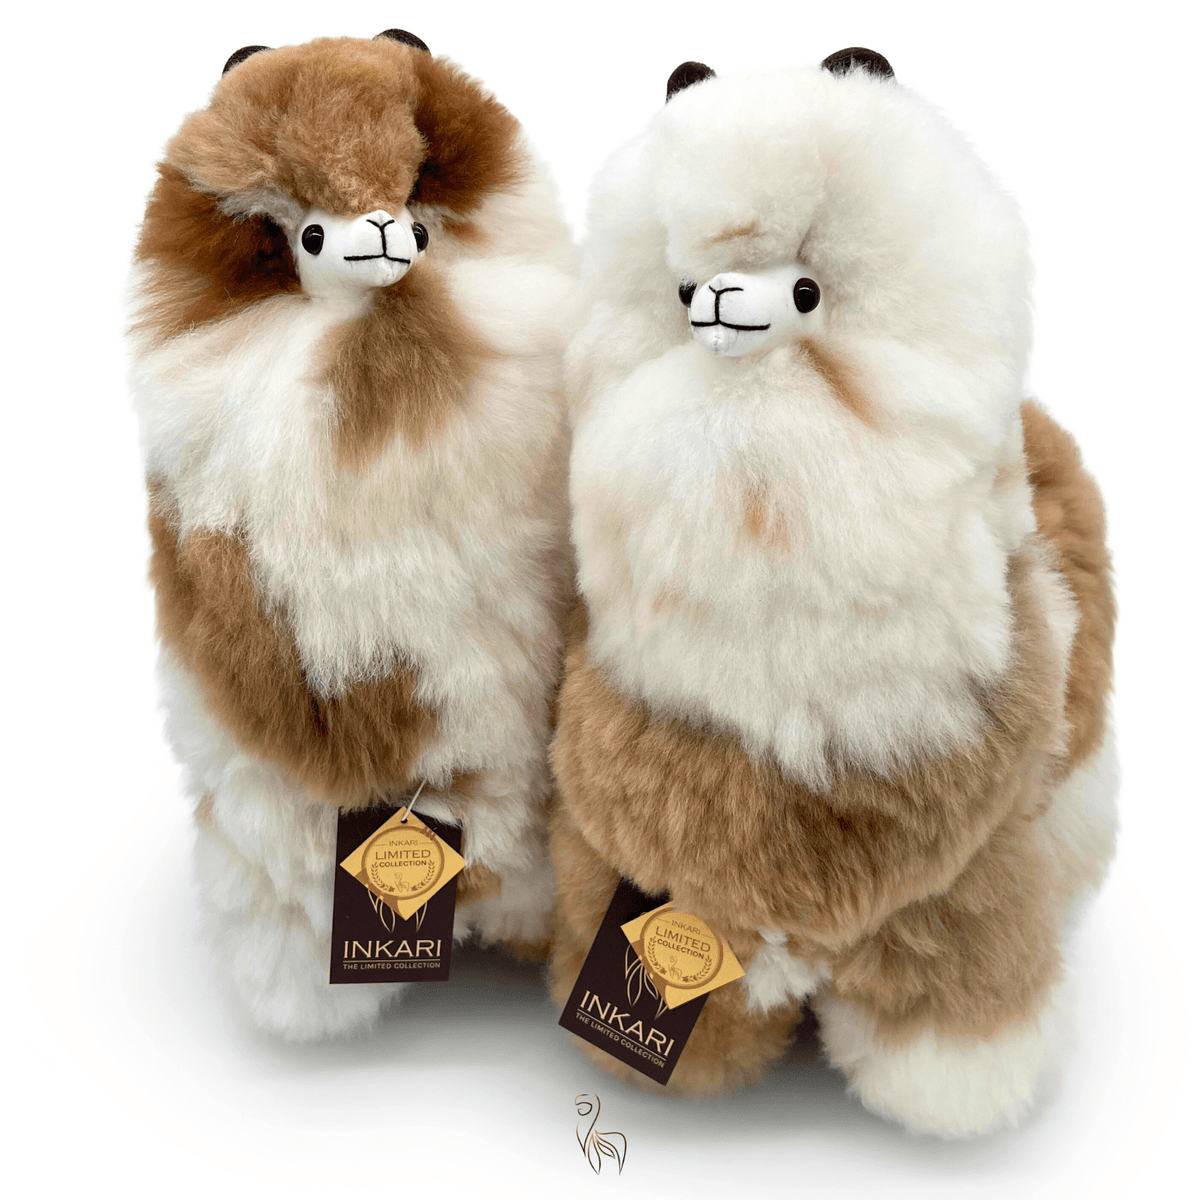 Koperen Wolf - Groot alpacaspeelgoed (50 cm) - Beperkte editie